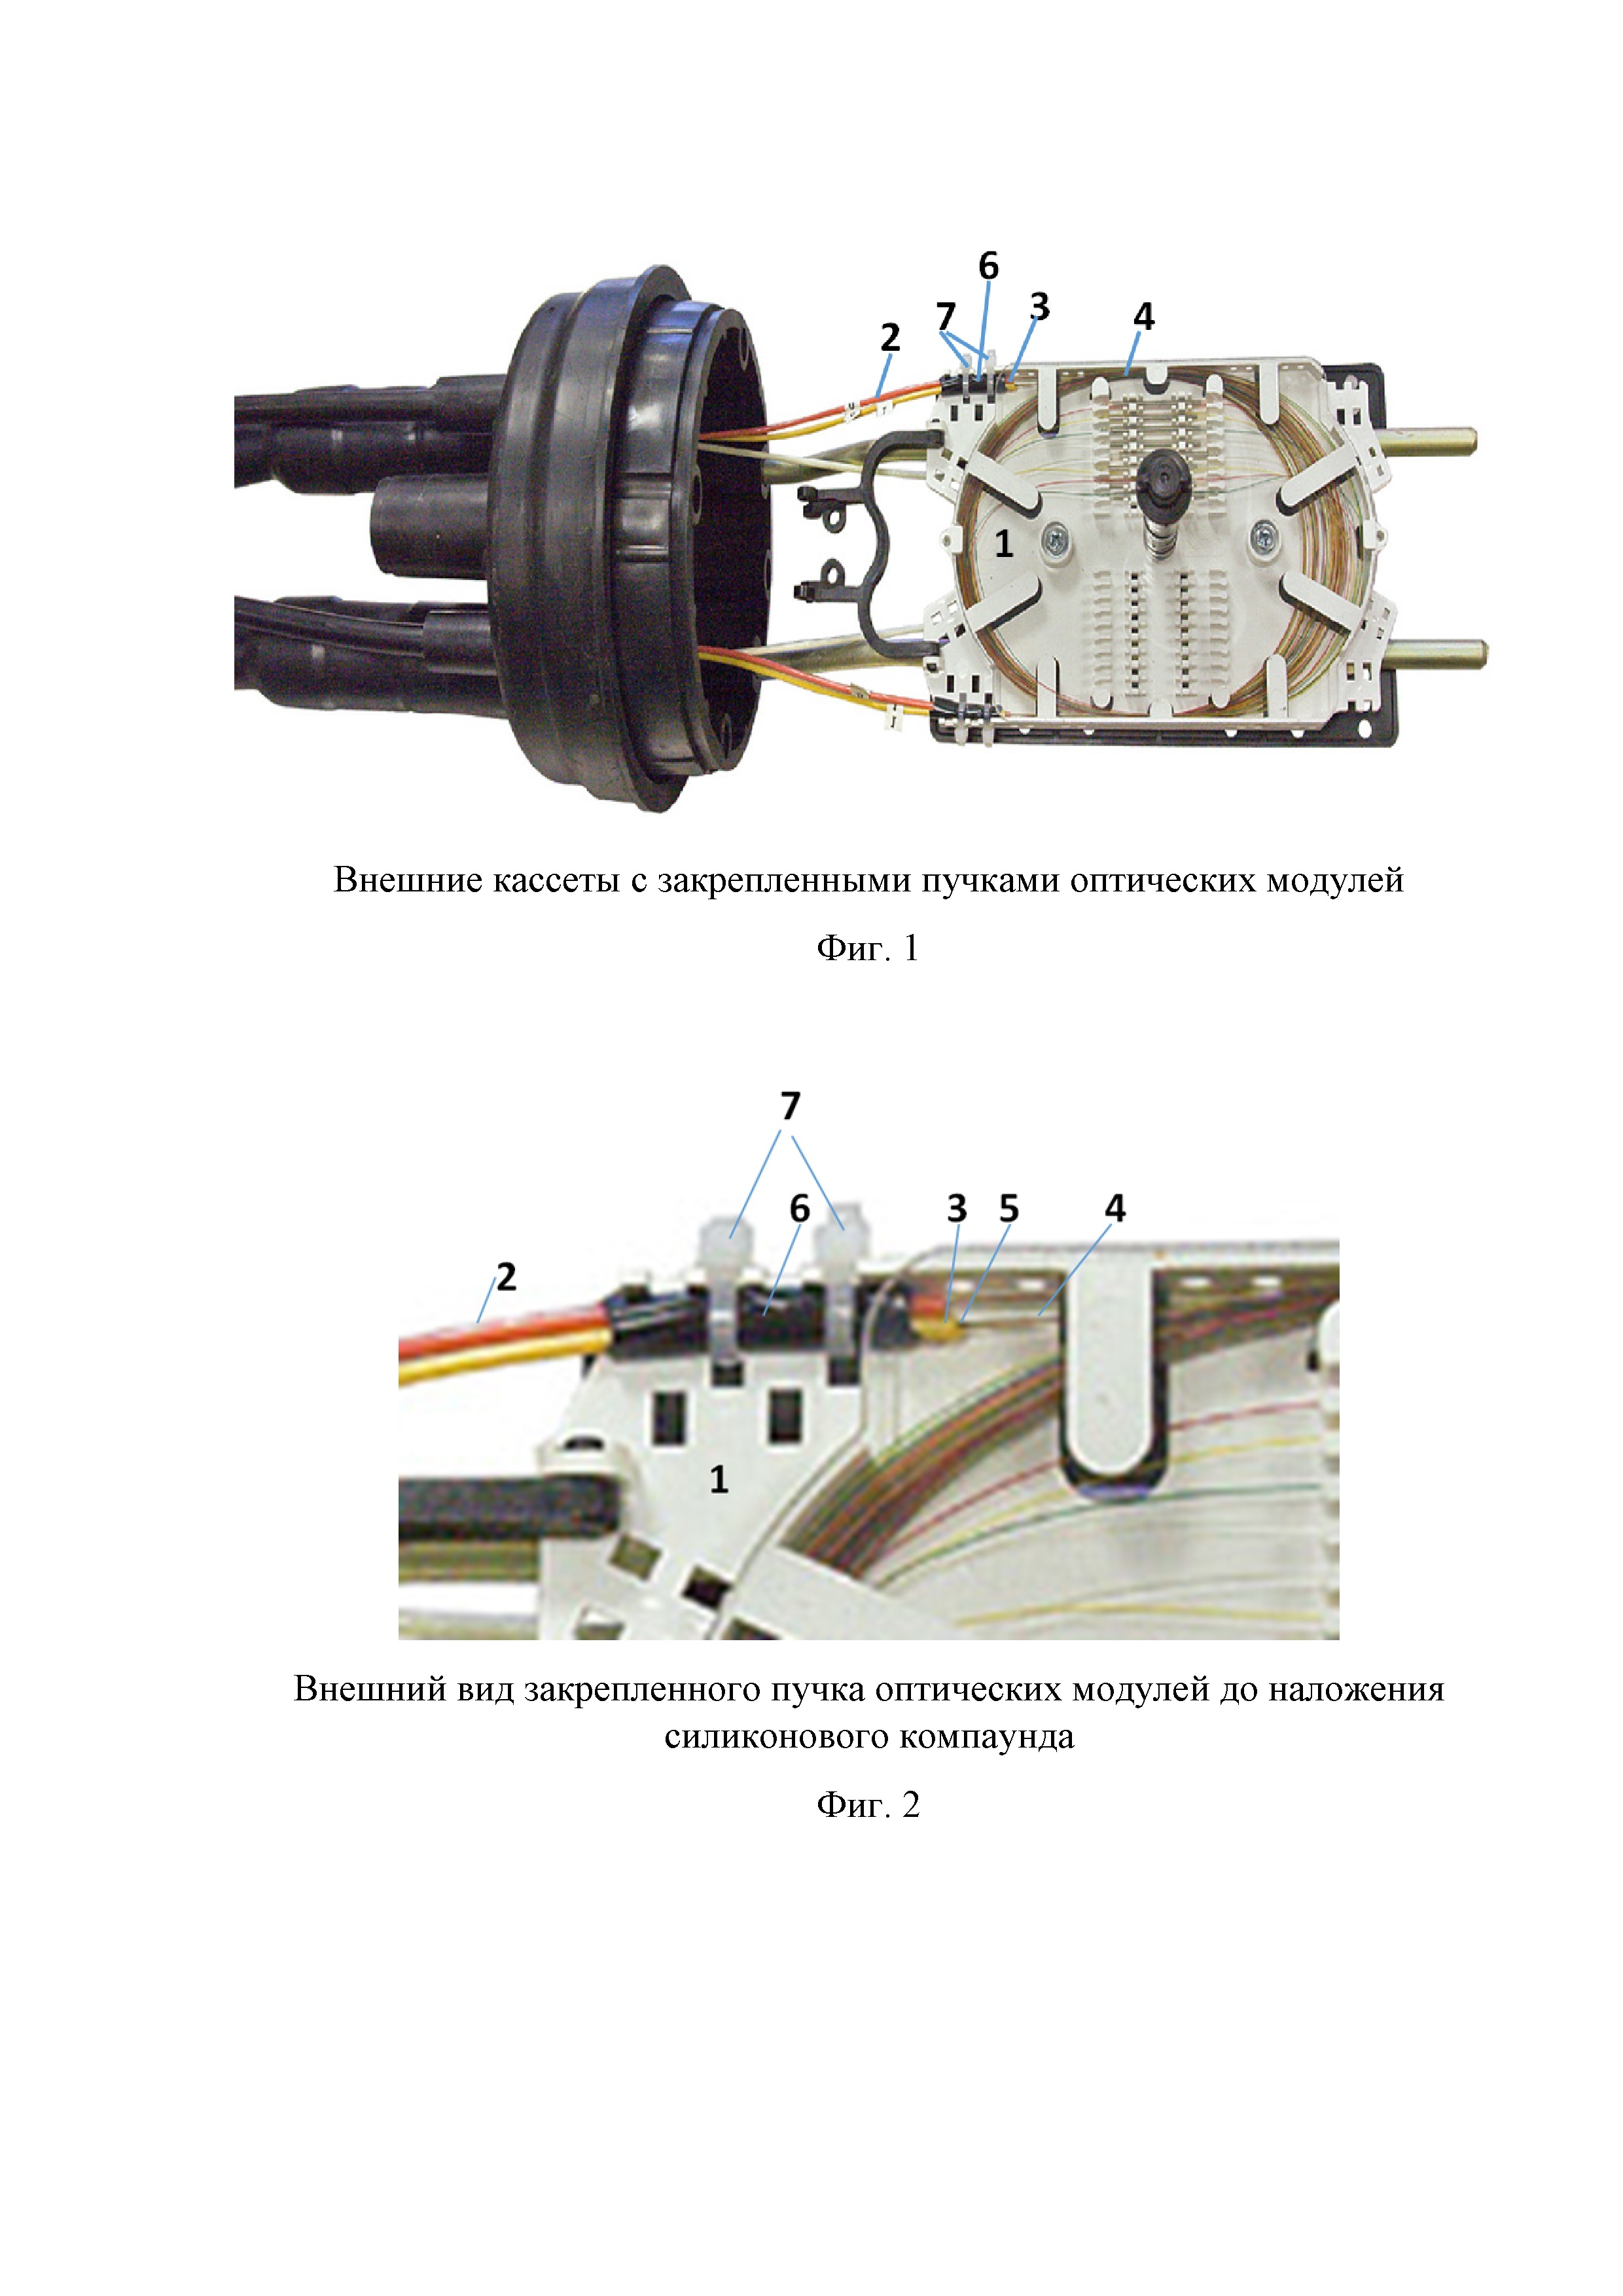 Способ крепления оптических модулей оптического кабеля на кассете муфты при сращивании длин оптического кабеля